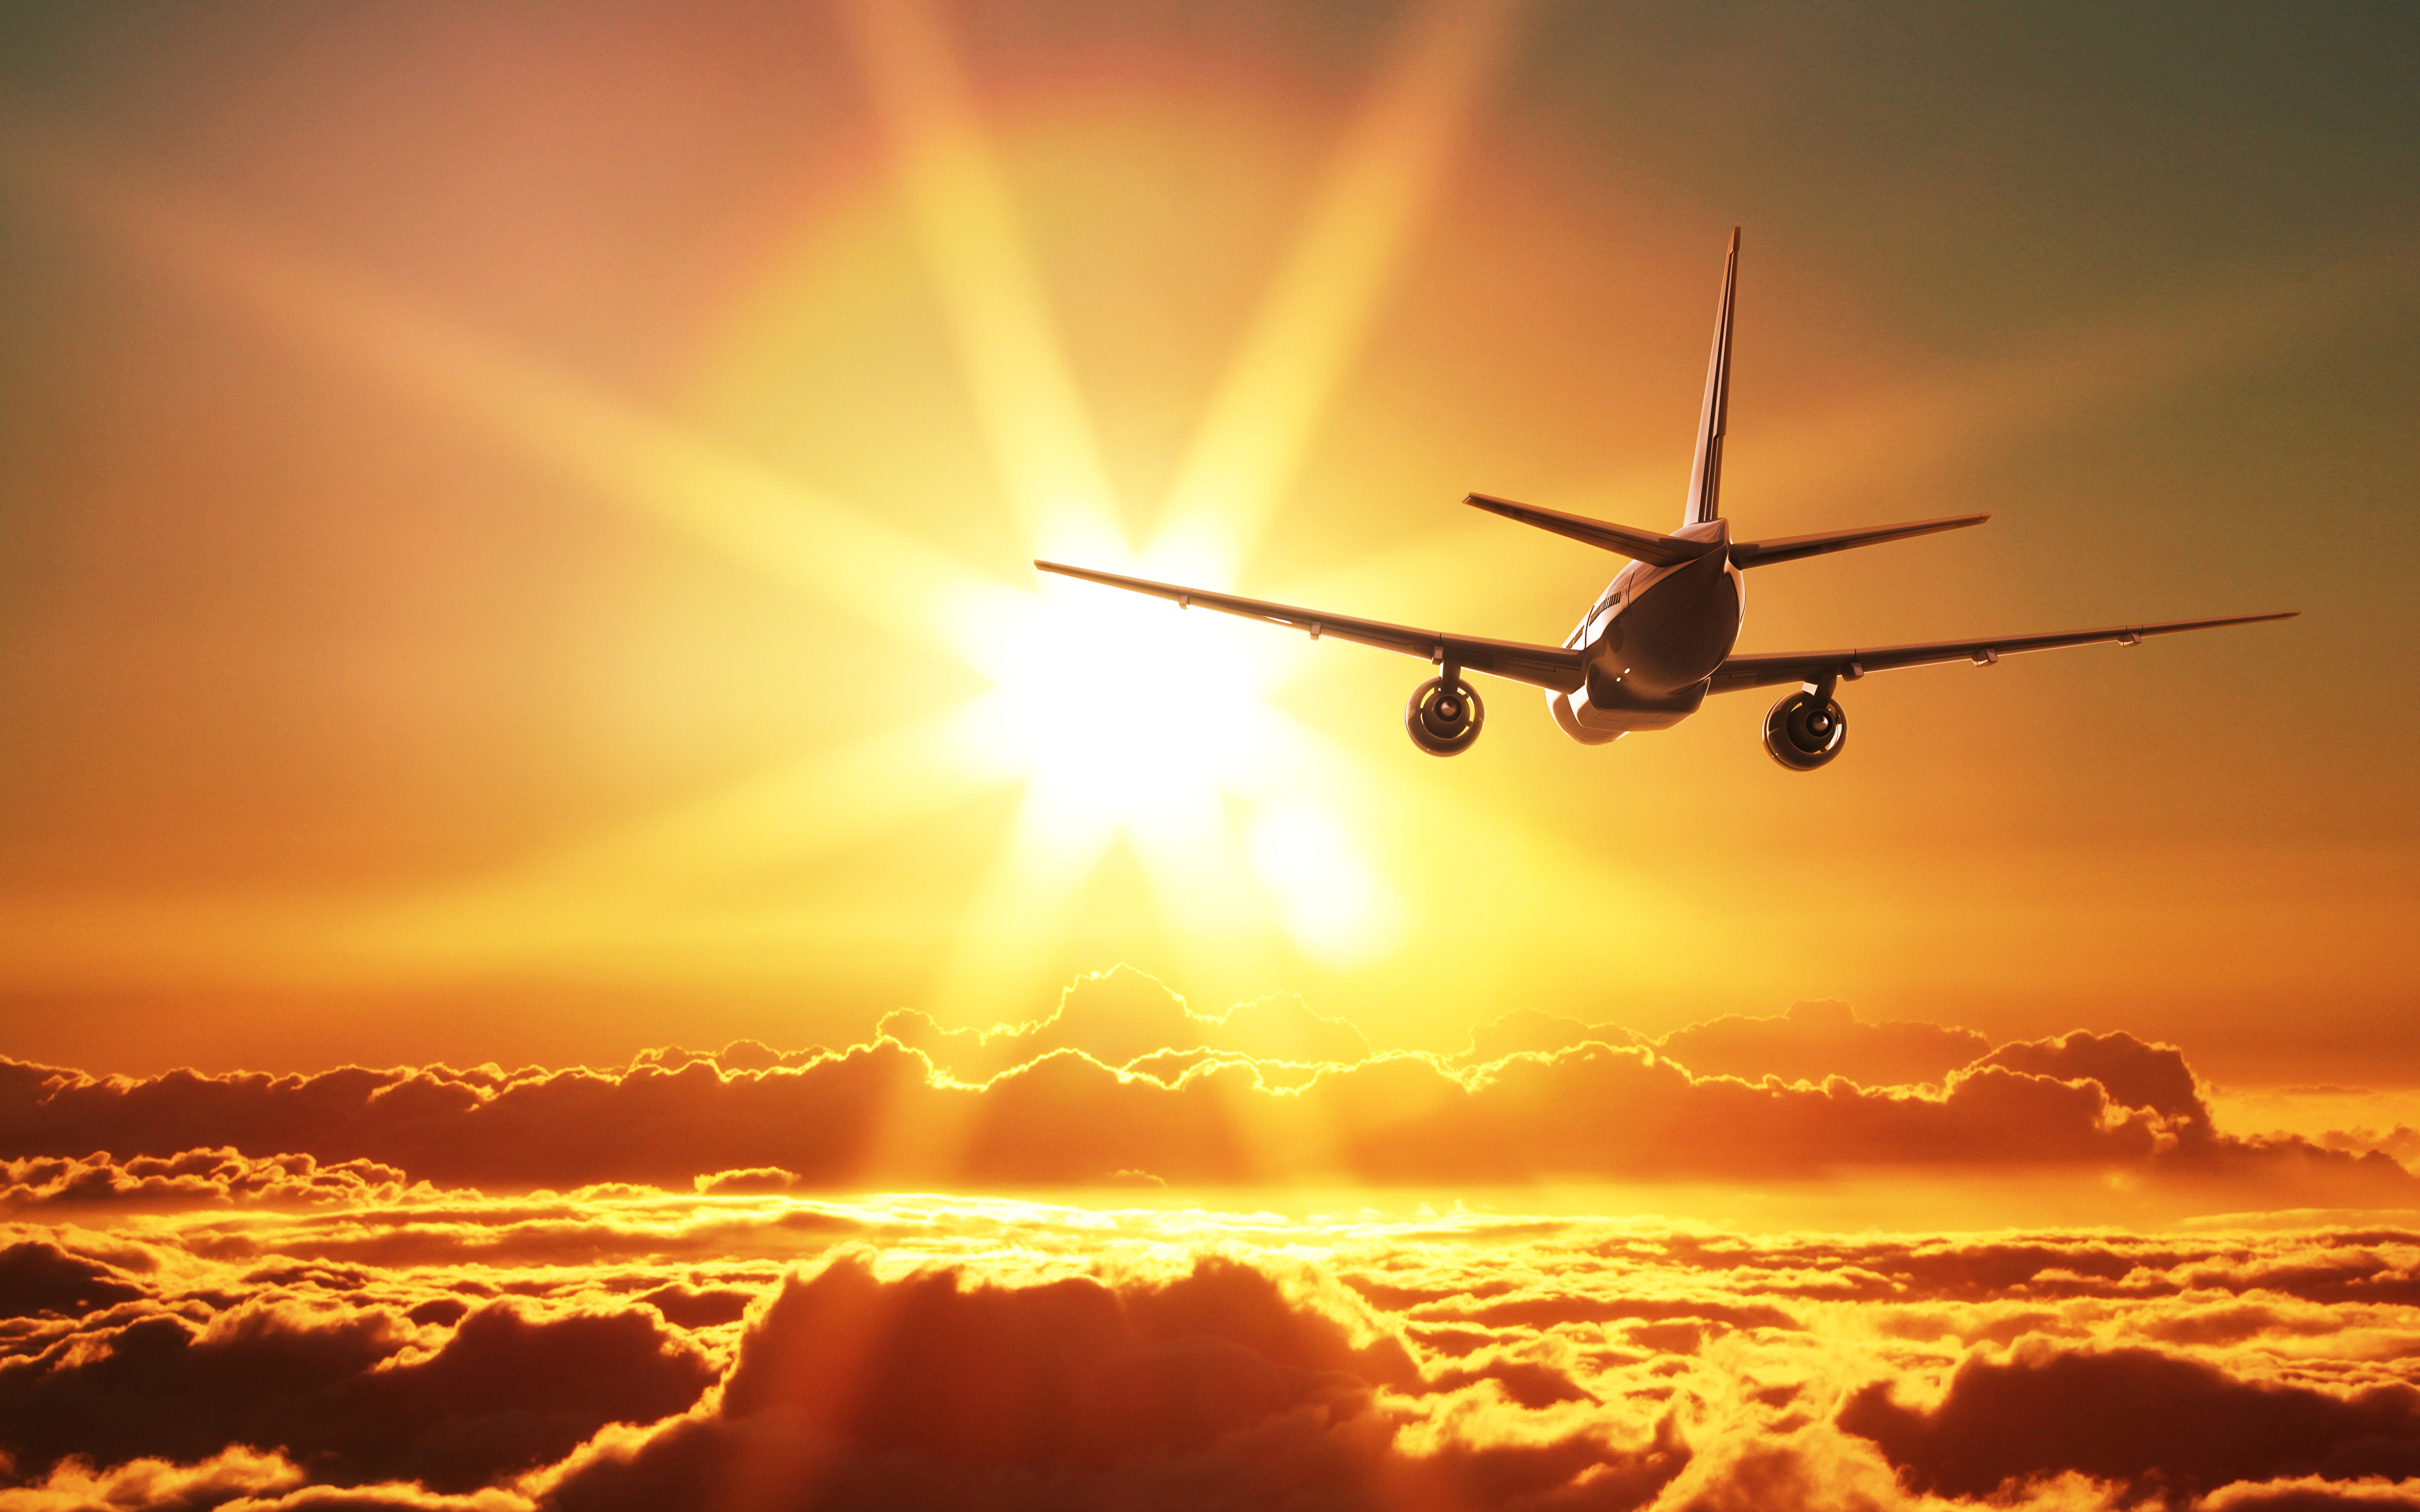 Картинка Самолеты Пассажирские Самолеты солнца летят Облака Авиация 3840x2400 Солнце Полет летит летящий облако облачно